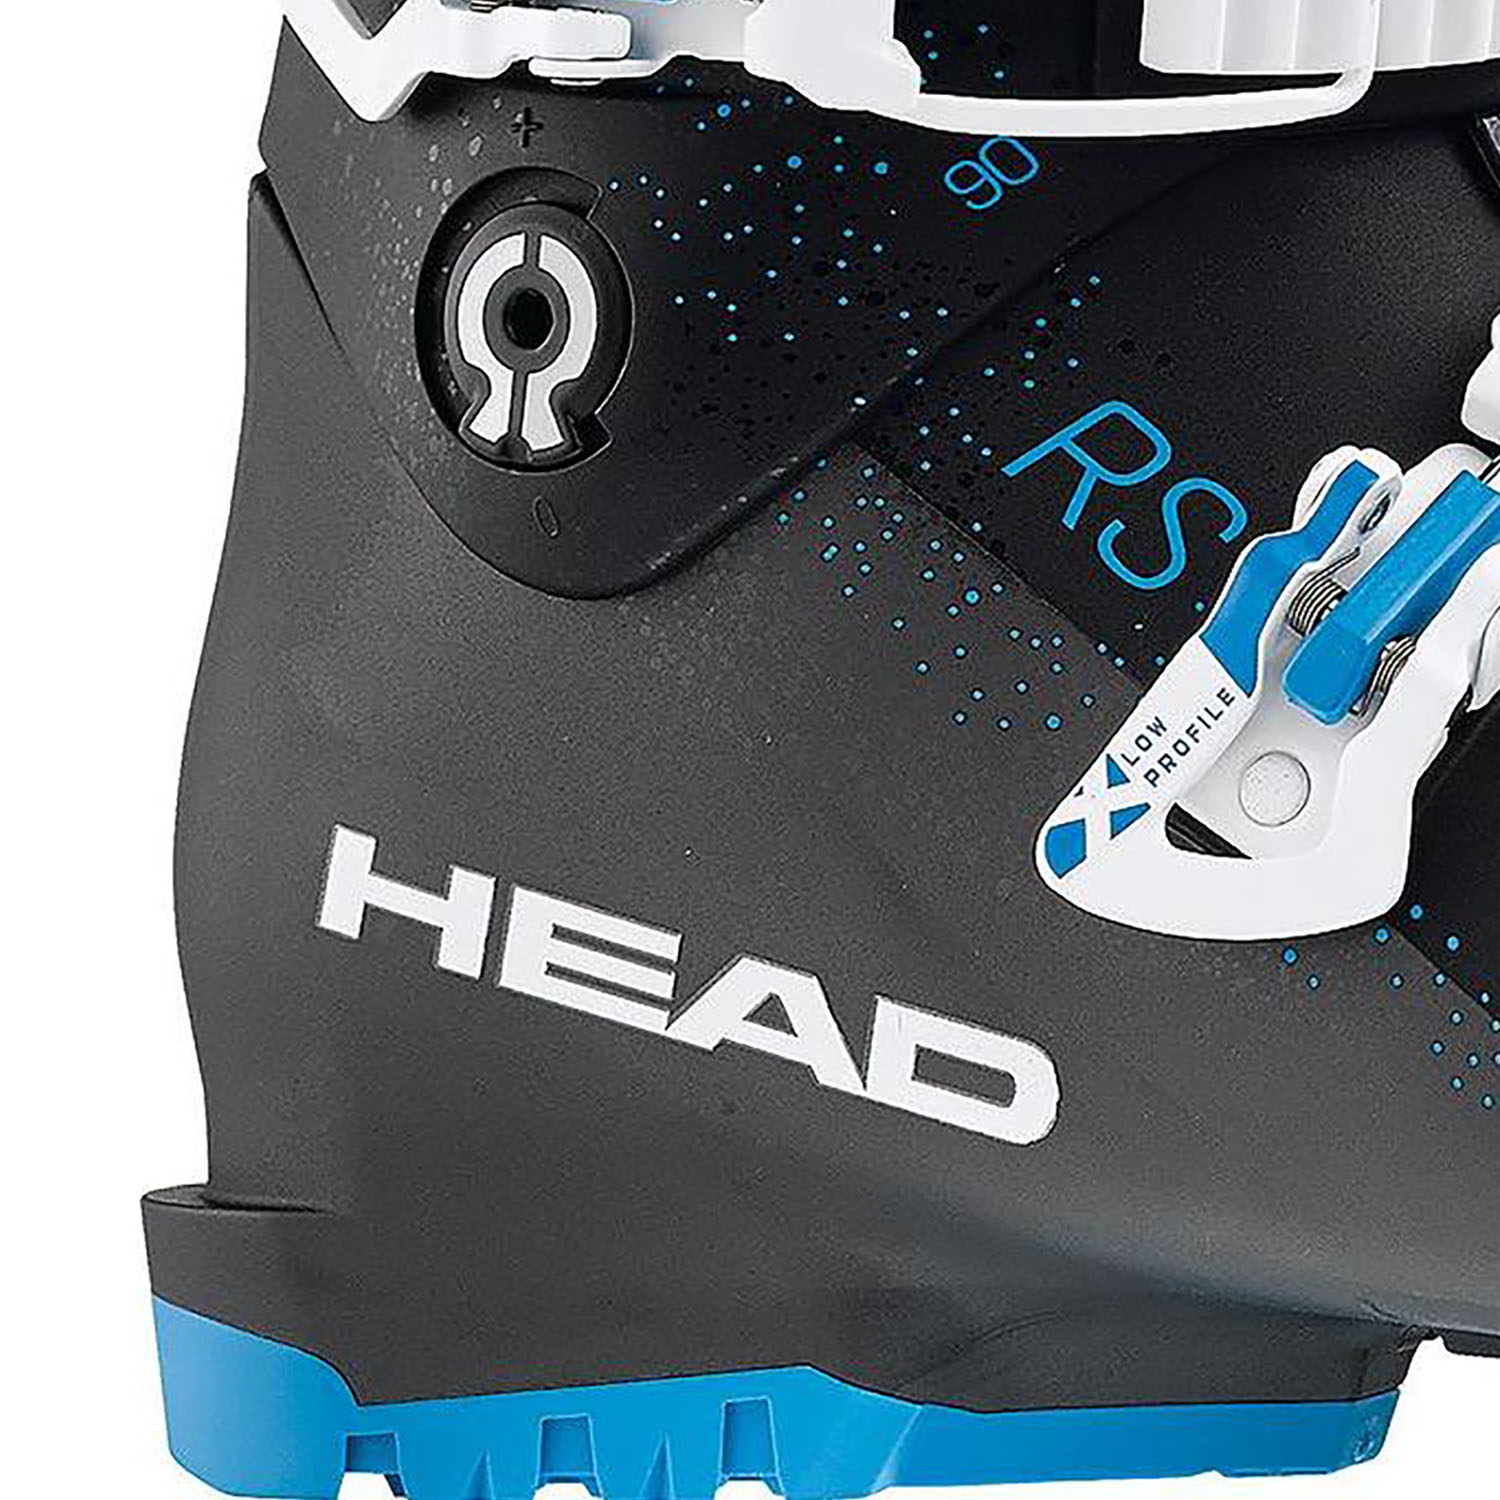 Горнолыжные ботинки HEAD Vector RS 90 W black/anthracite